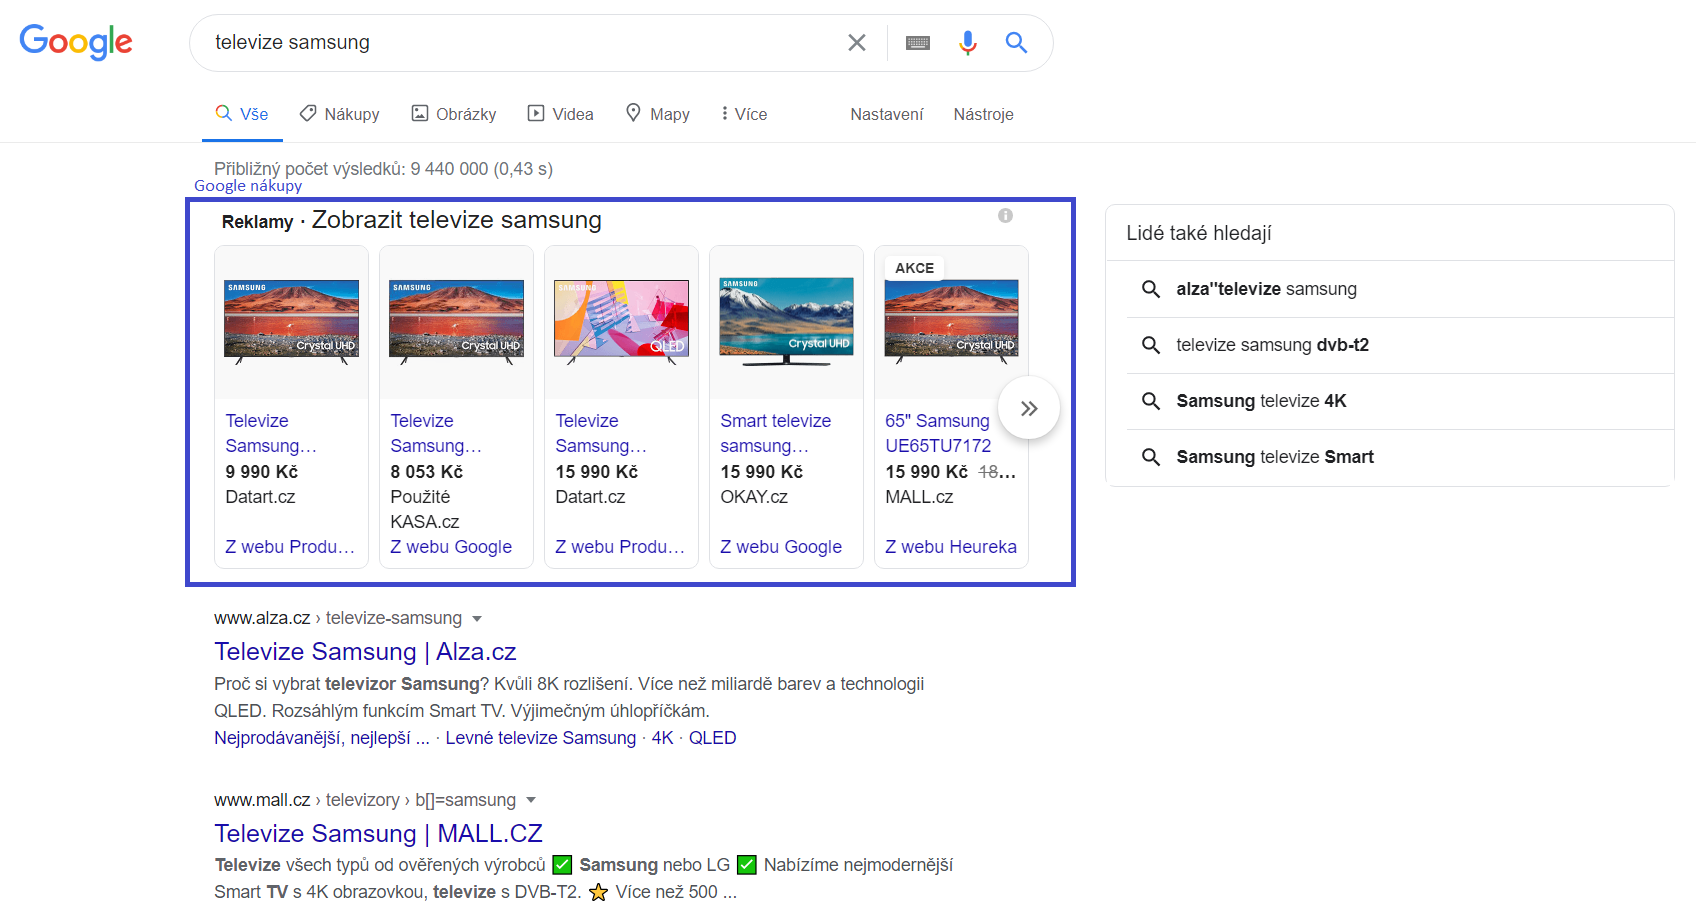 Google nákupy pod vyhledávací lištou